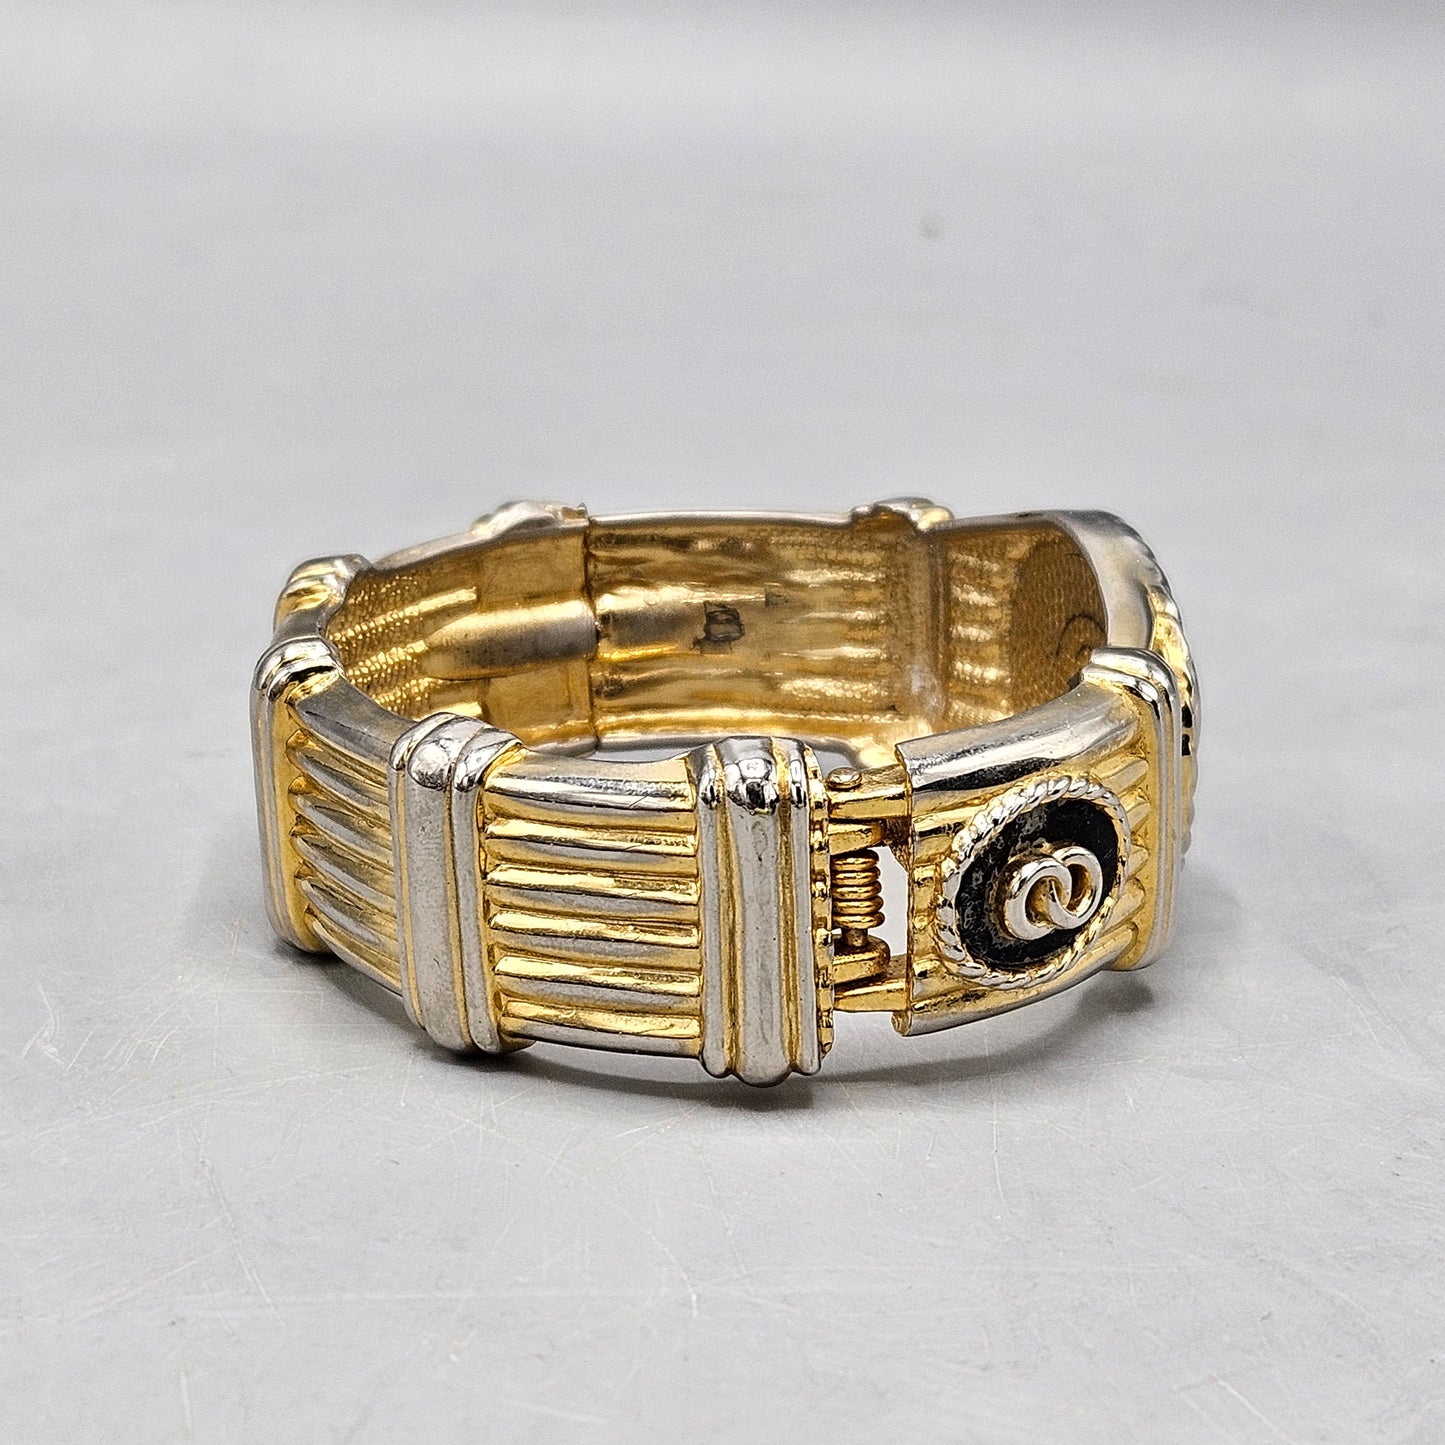 Vintage Hinged Bangle Bracelet with Double Circle Design & Raised Gold Tone